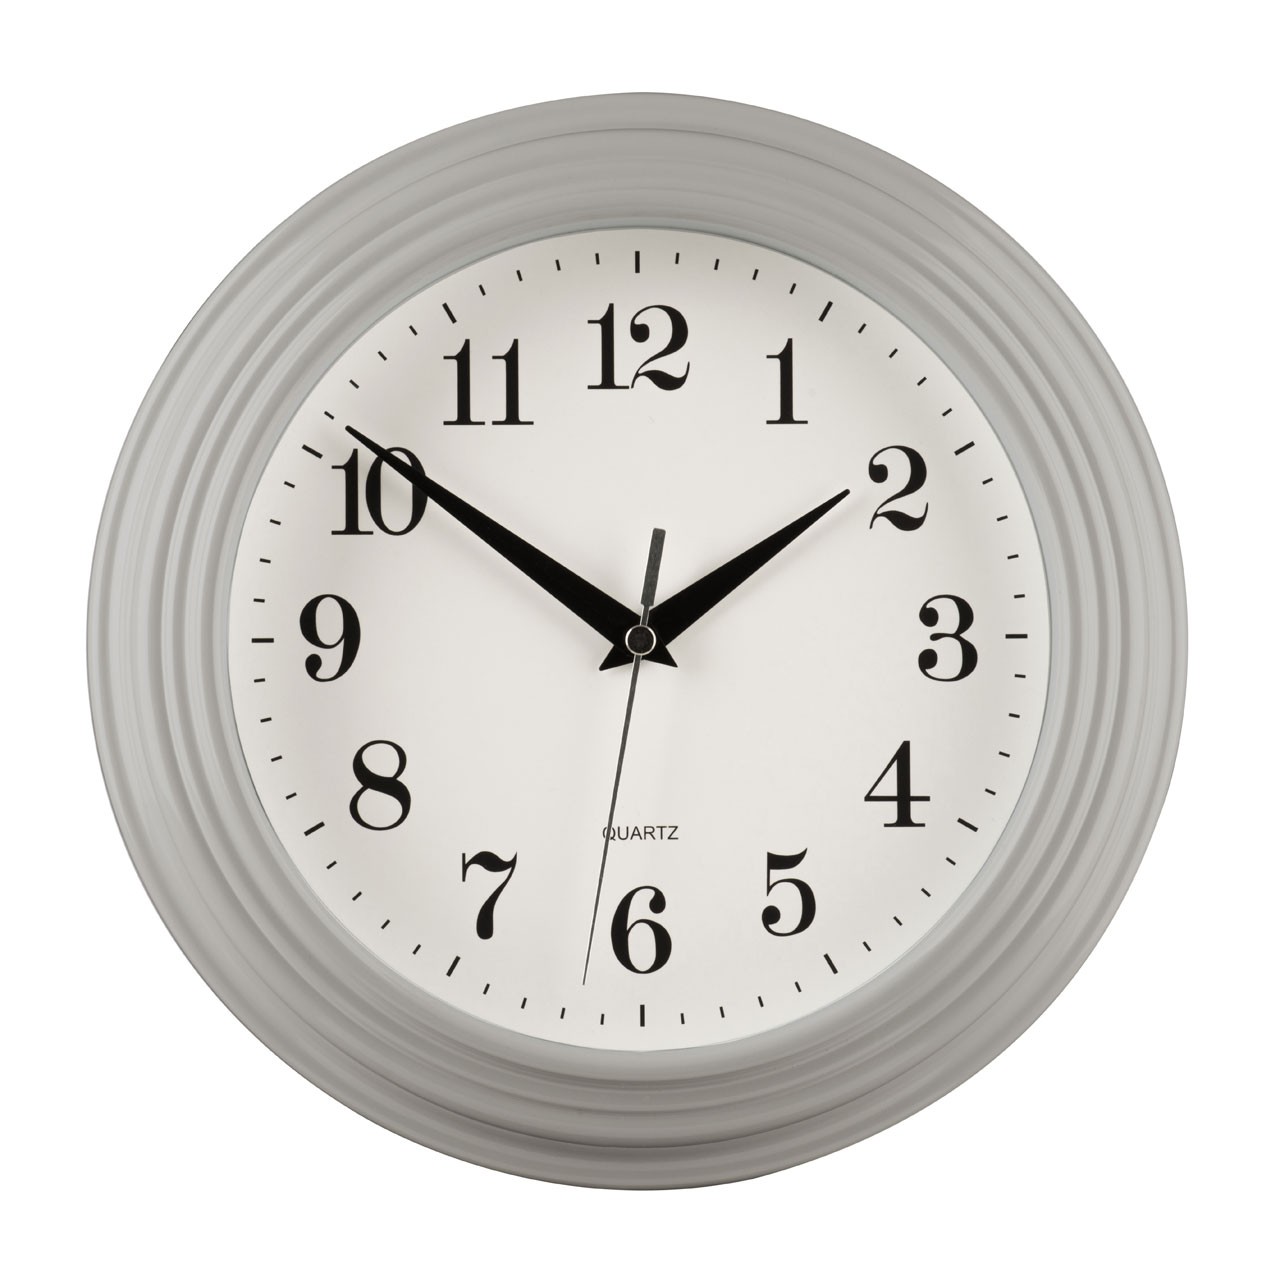 Prime Furnishing Wall Clock - Grey